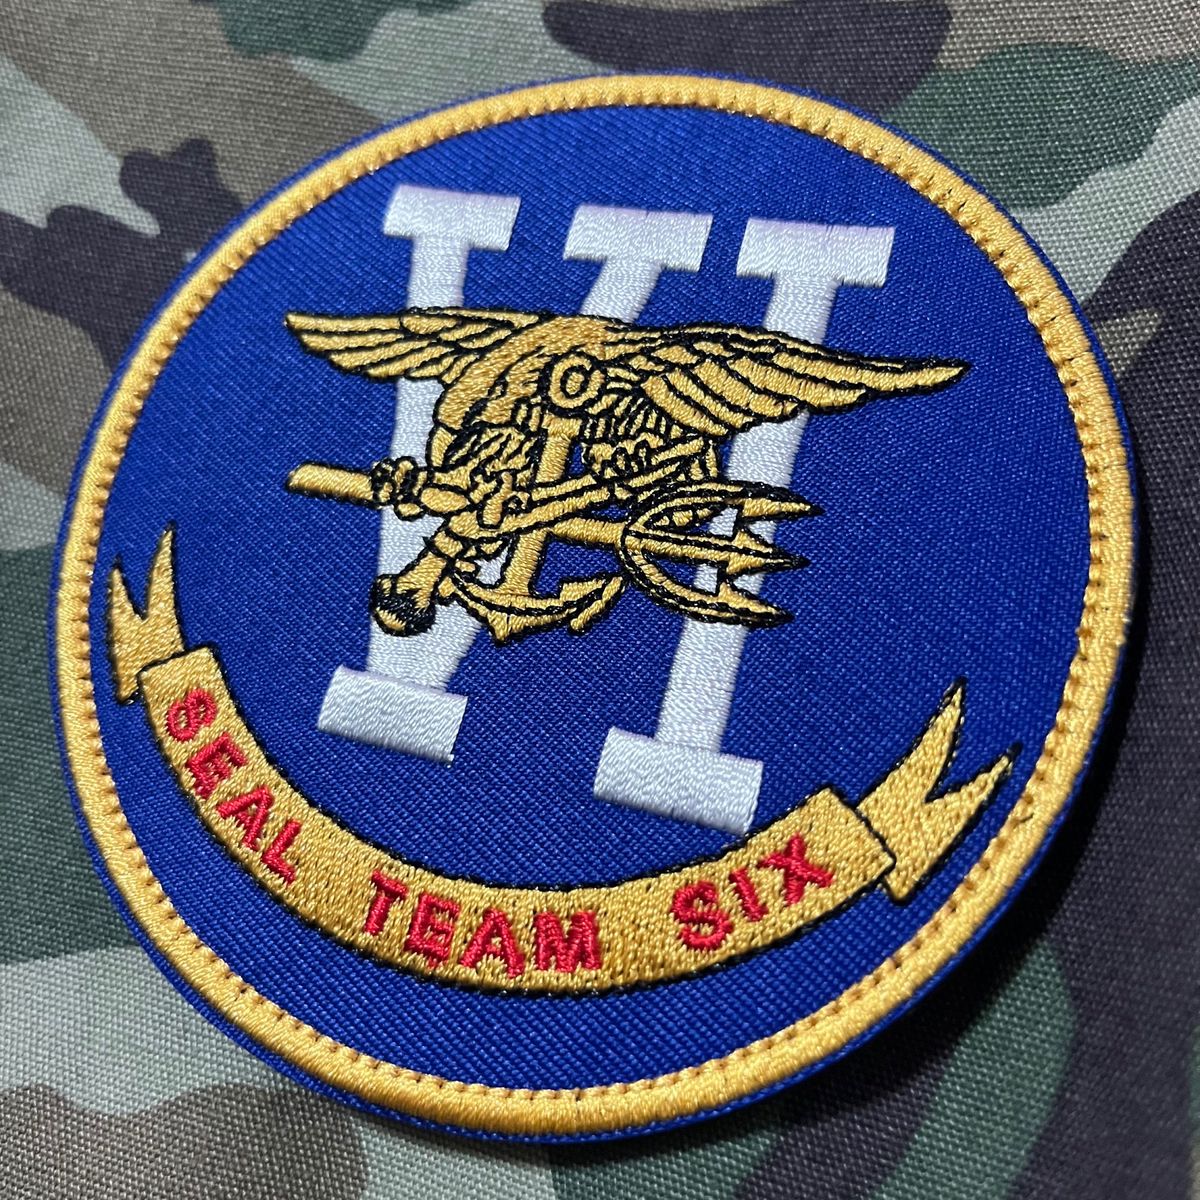 NAVY SEALS TEAM SIX ミリタリー 刺繍 パッチ ワッペン 海兵隊 ネイビーシールズ 特殊部隊 サバゲー リメイク